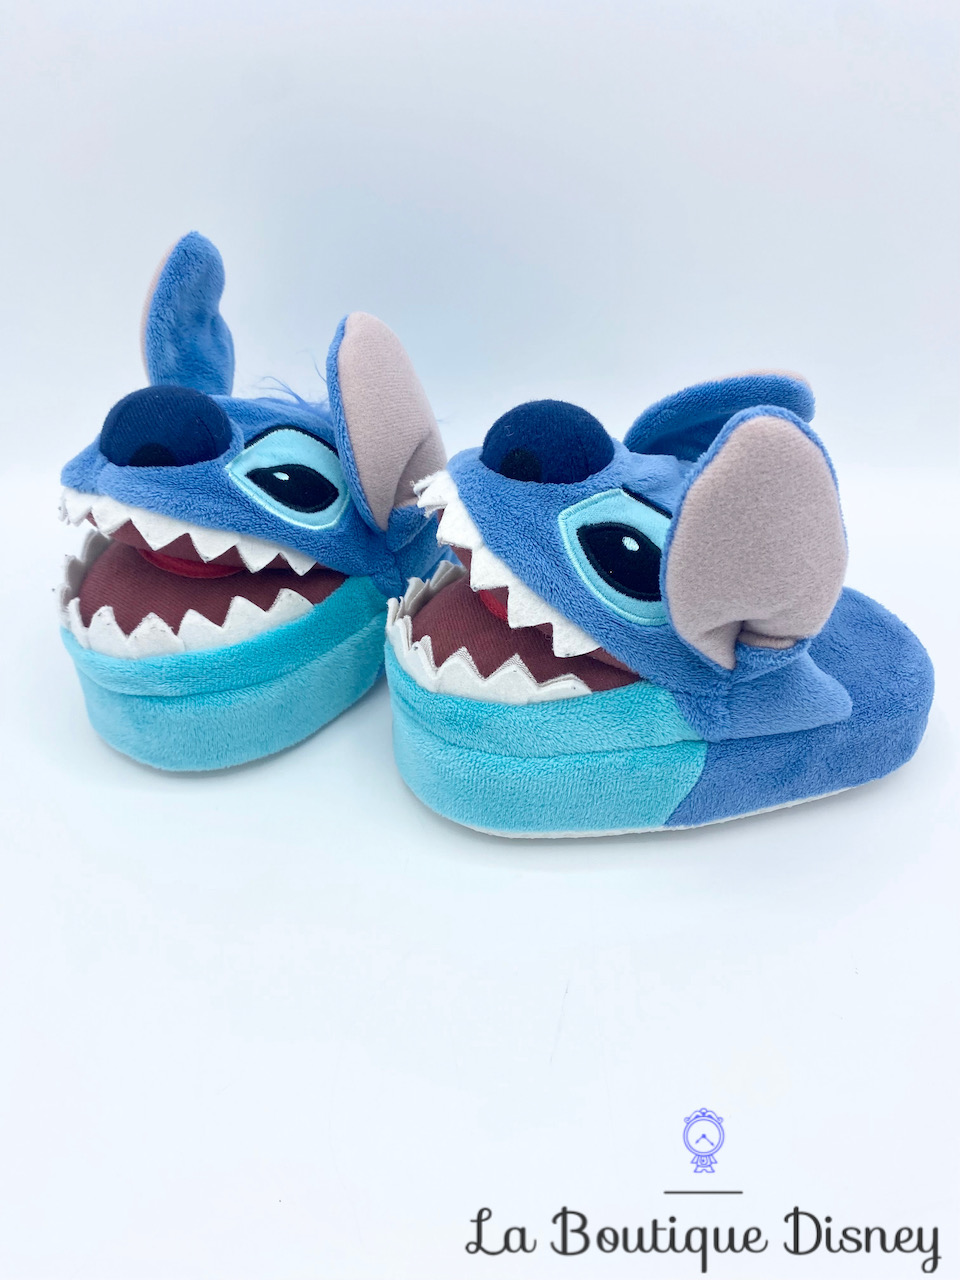 Chaussons Stitch Disneyland Paris Disney pantoufles relief peluche bleu